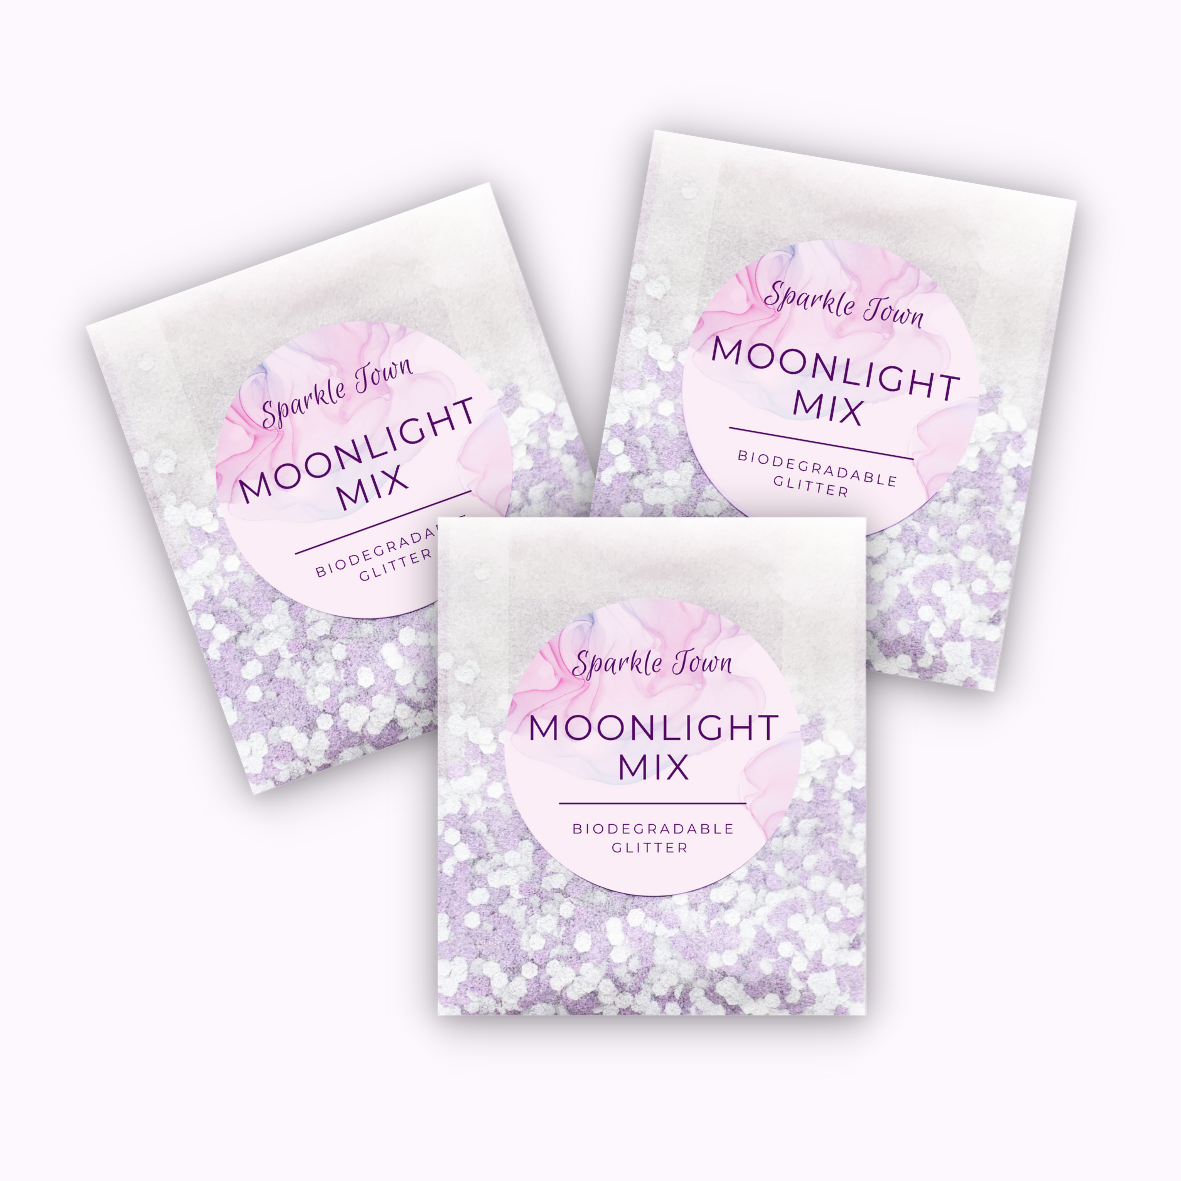 Moonlight Mix Biodegradable Glitter